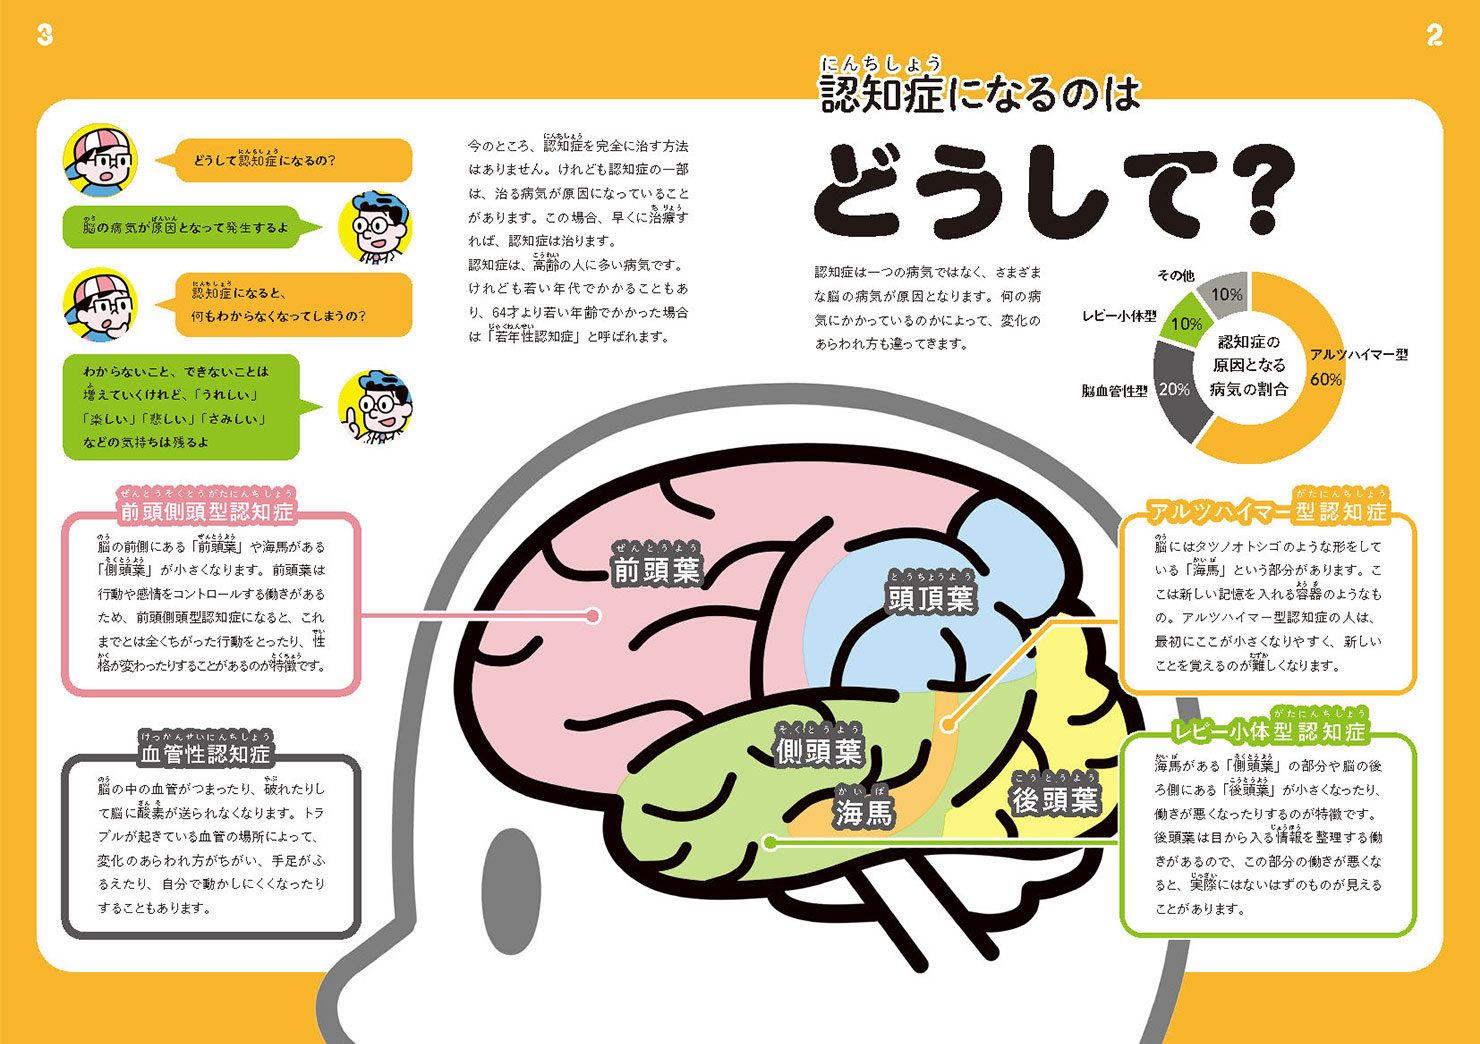 画像:冊子2,3ページの見開き。「認知症になるのはどうして？」という見出しと、人の脳をイラストで解説して「脳の病気である」ということが説明されている。